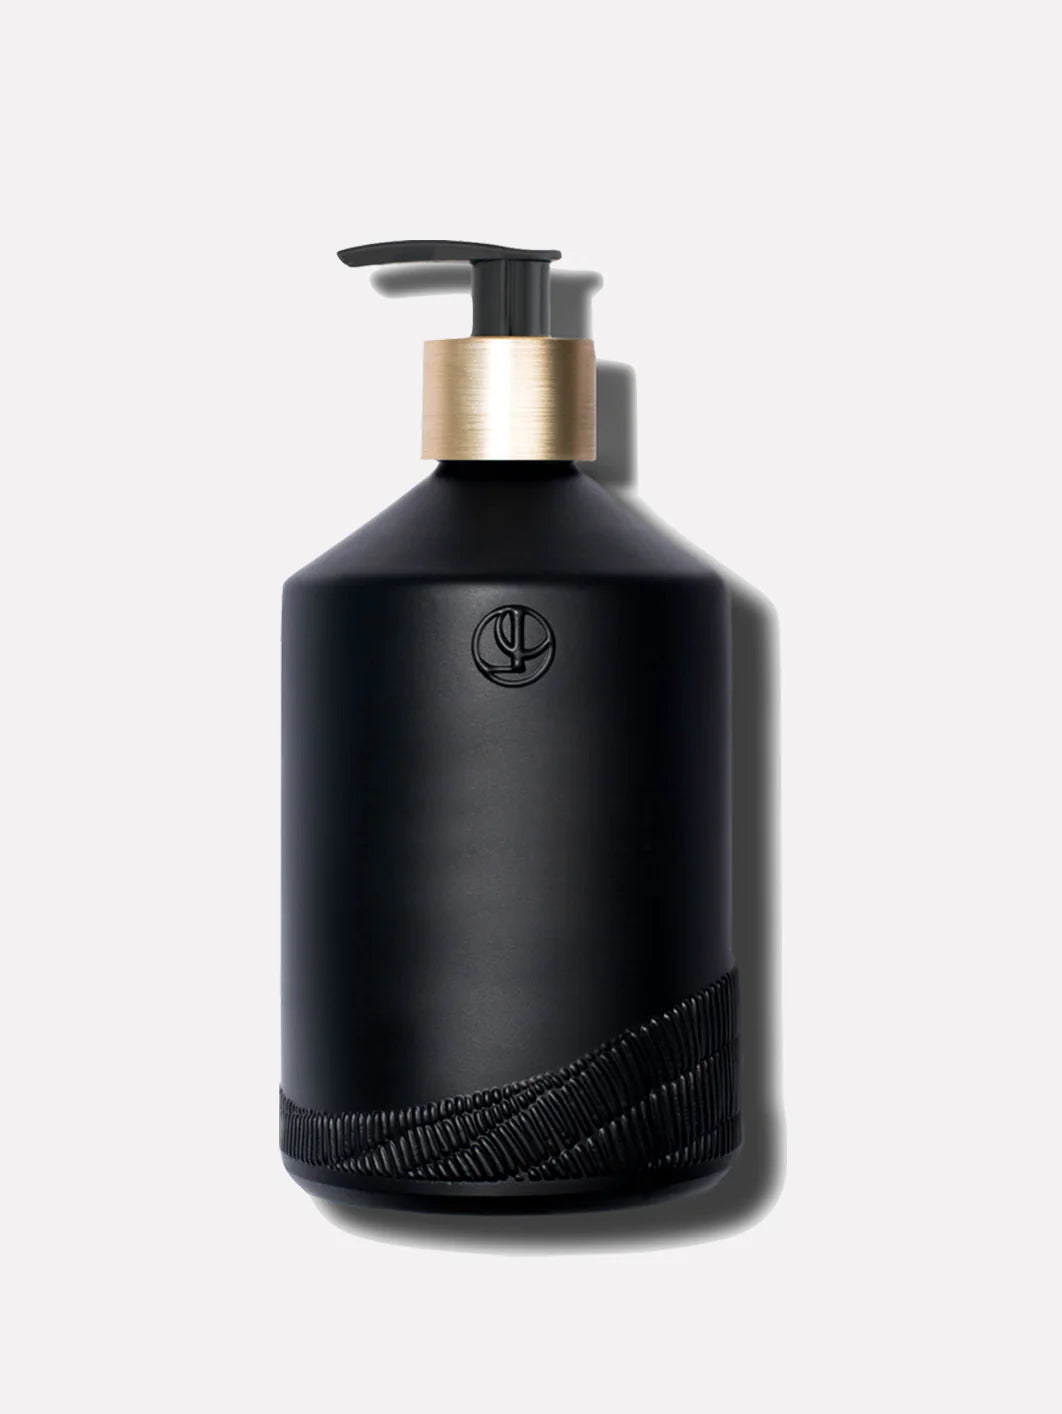 L'AVANT - Glass Empty Soap Bottle in Matte Black